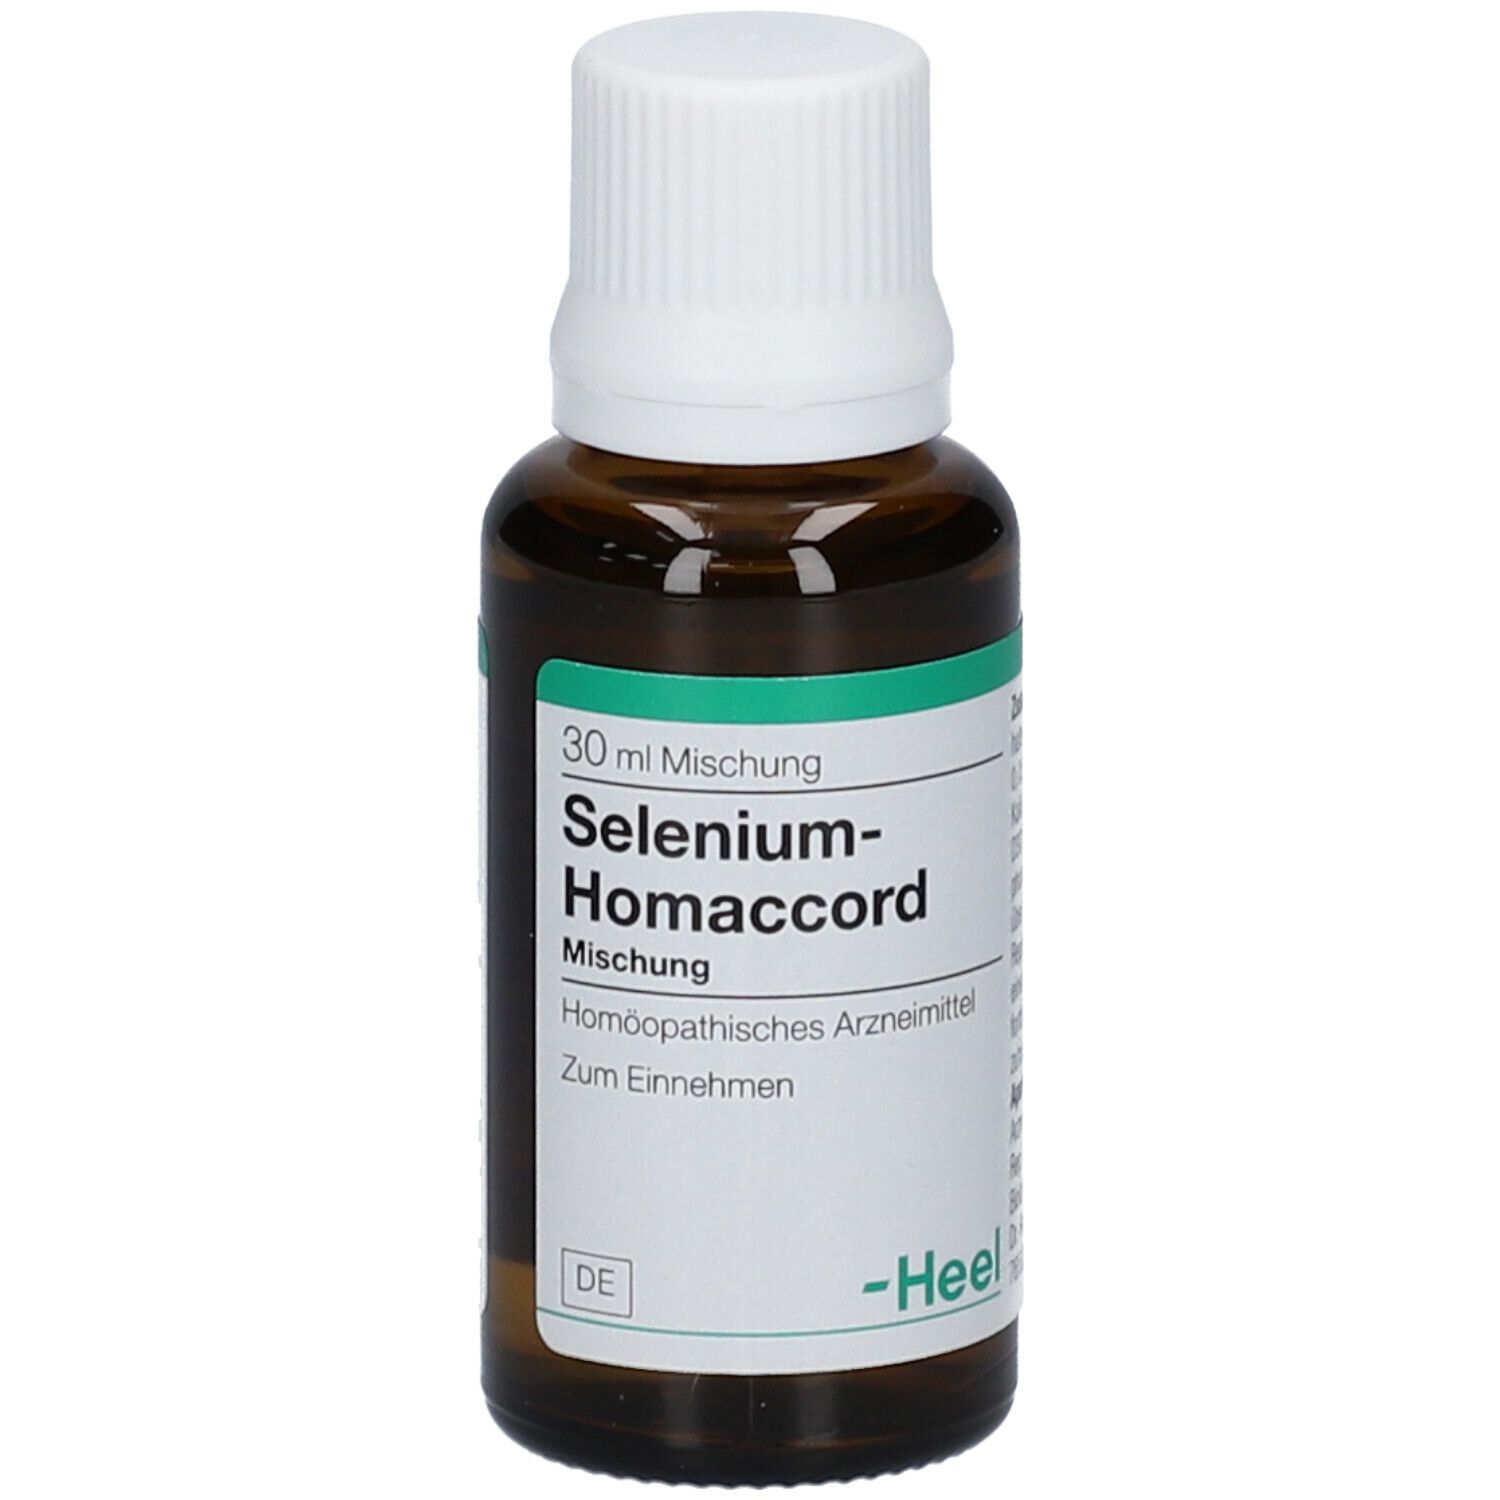 Selenium-Homaccord® Mischung